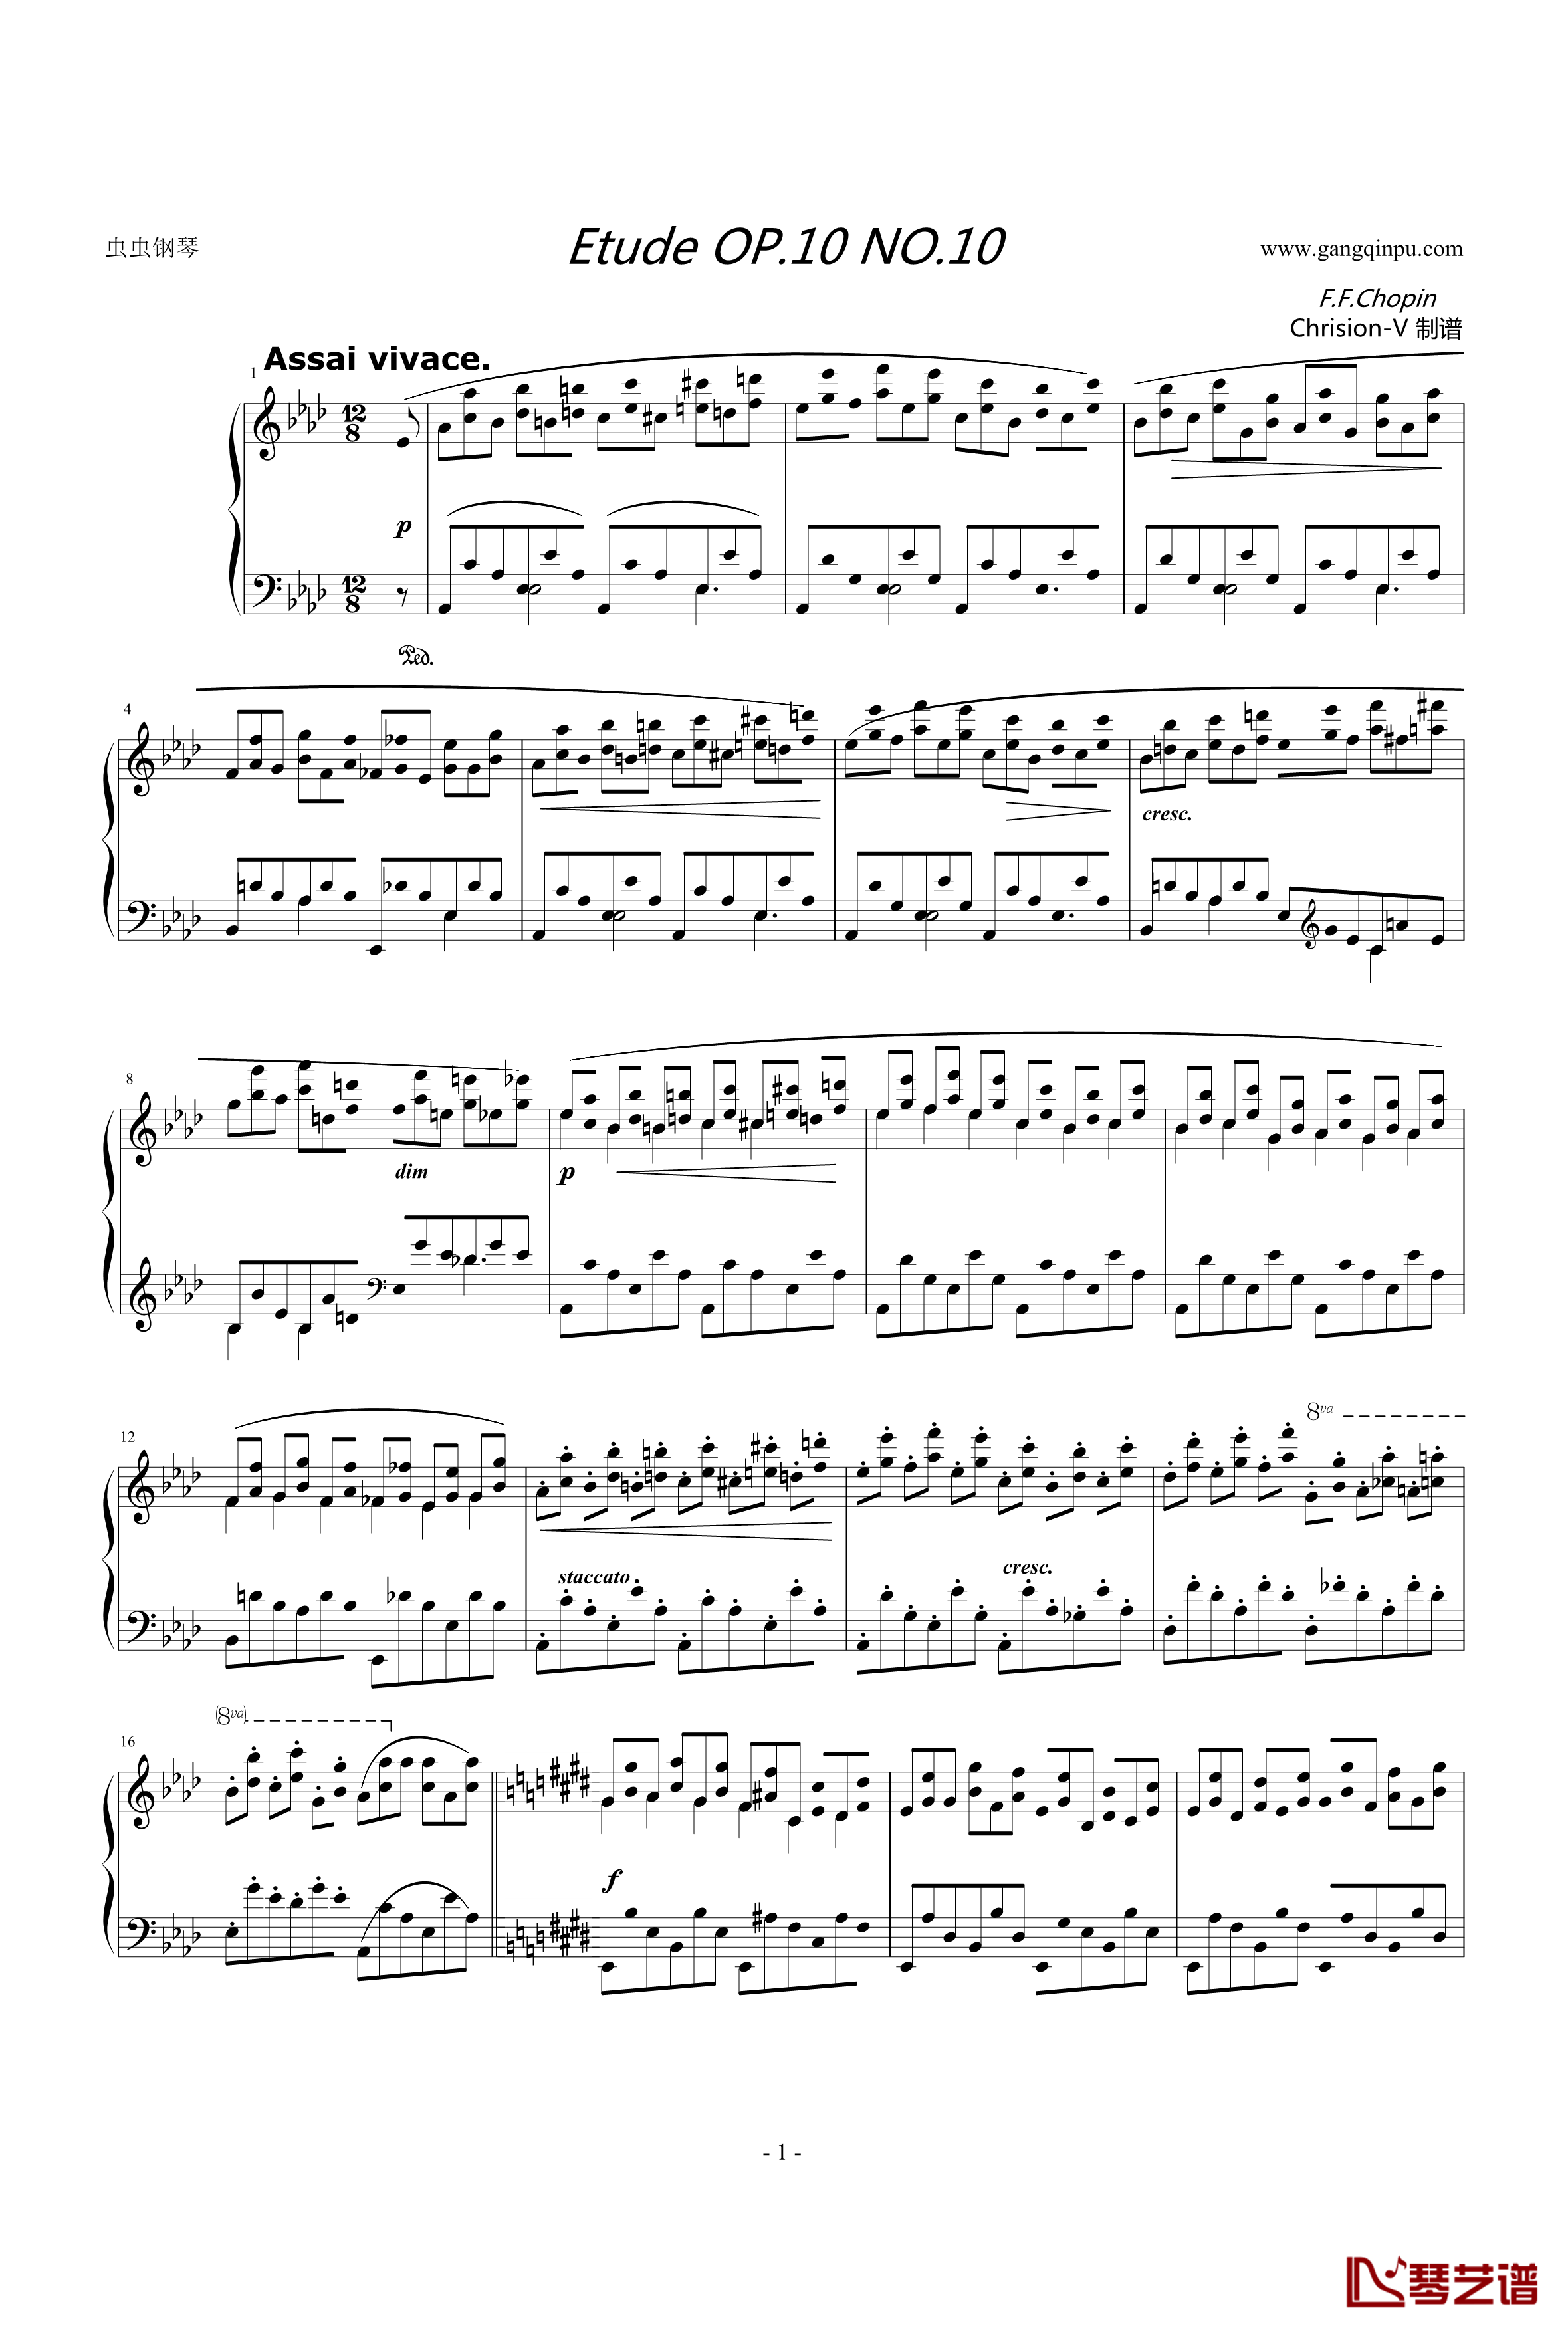 肖邦练习曲Etude OP.10 No.10钢琴谱-chopin1